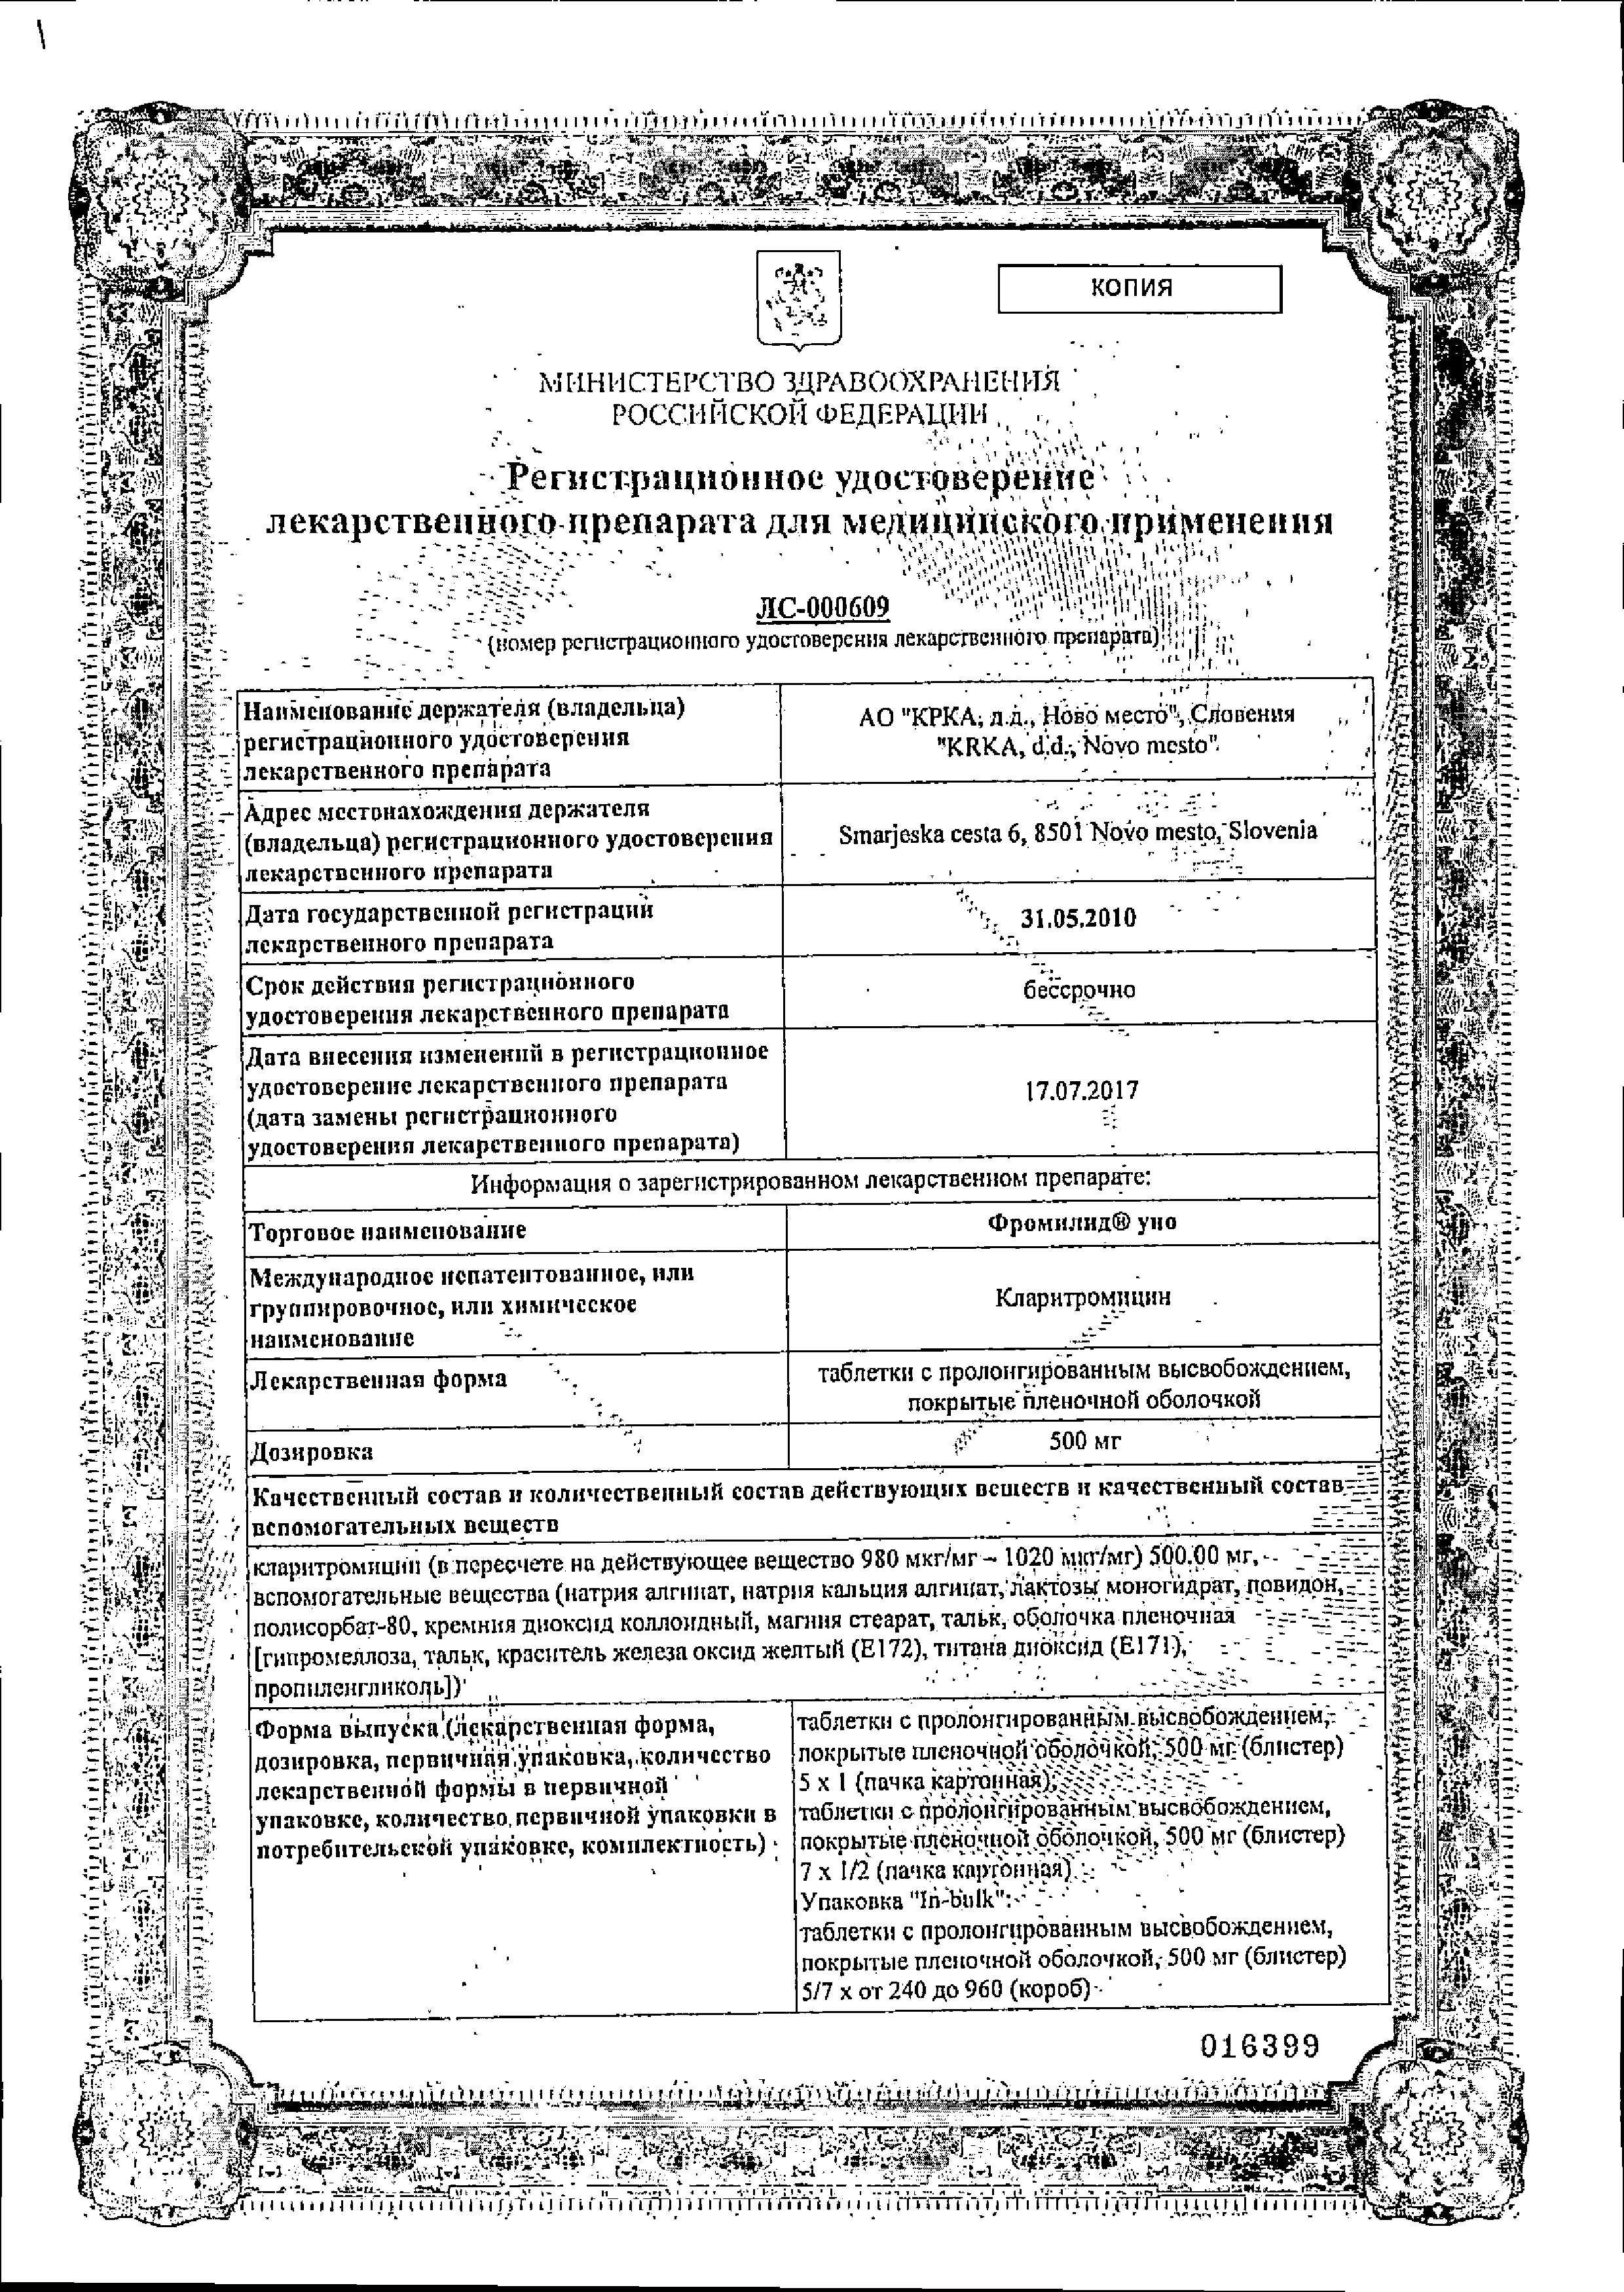 Фромилид Уно сертификат